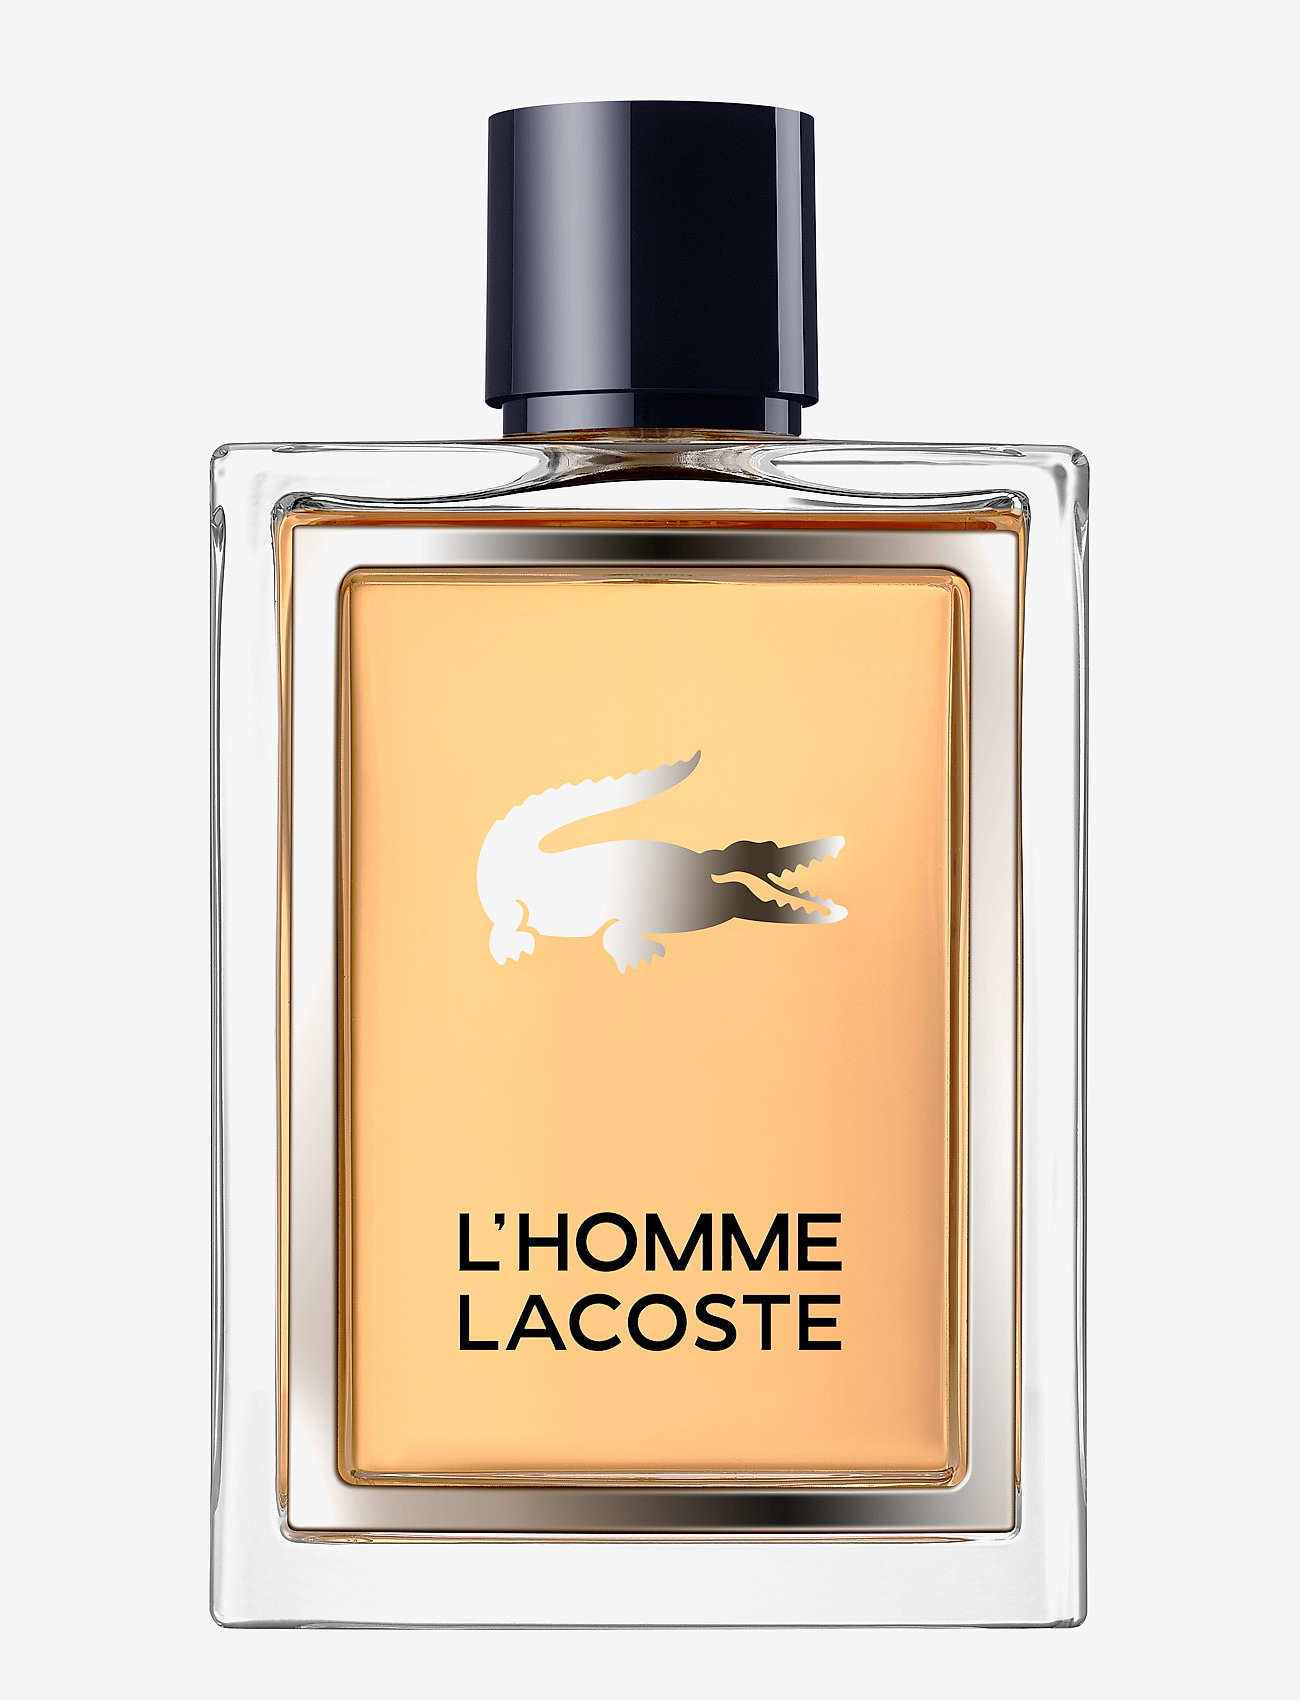  Lacoste Fragrance  L homme Eau De Toilette 539 kr Boozt com